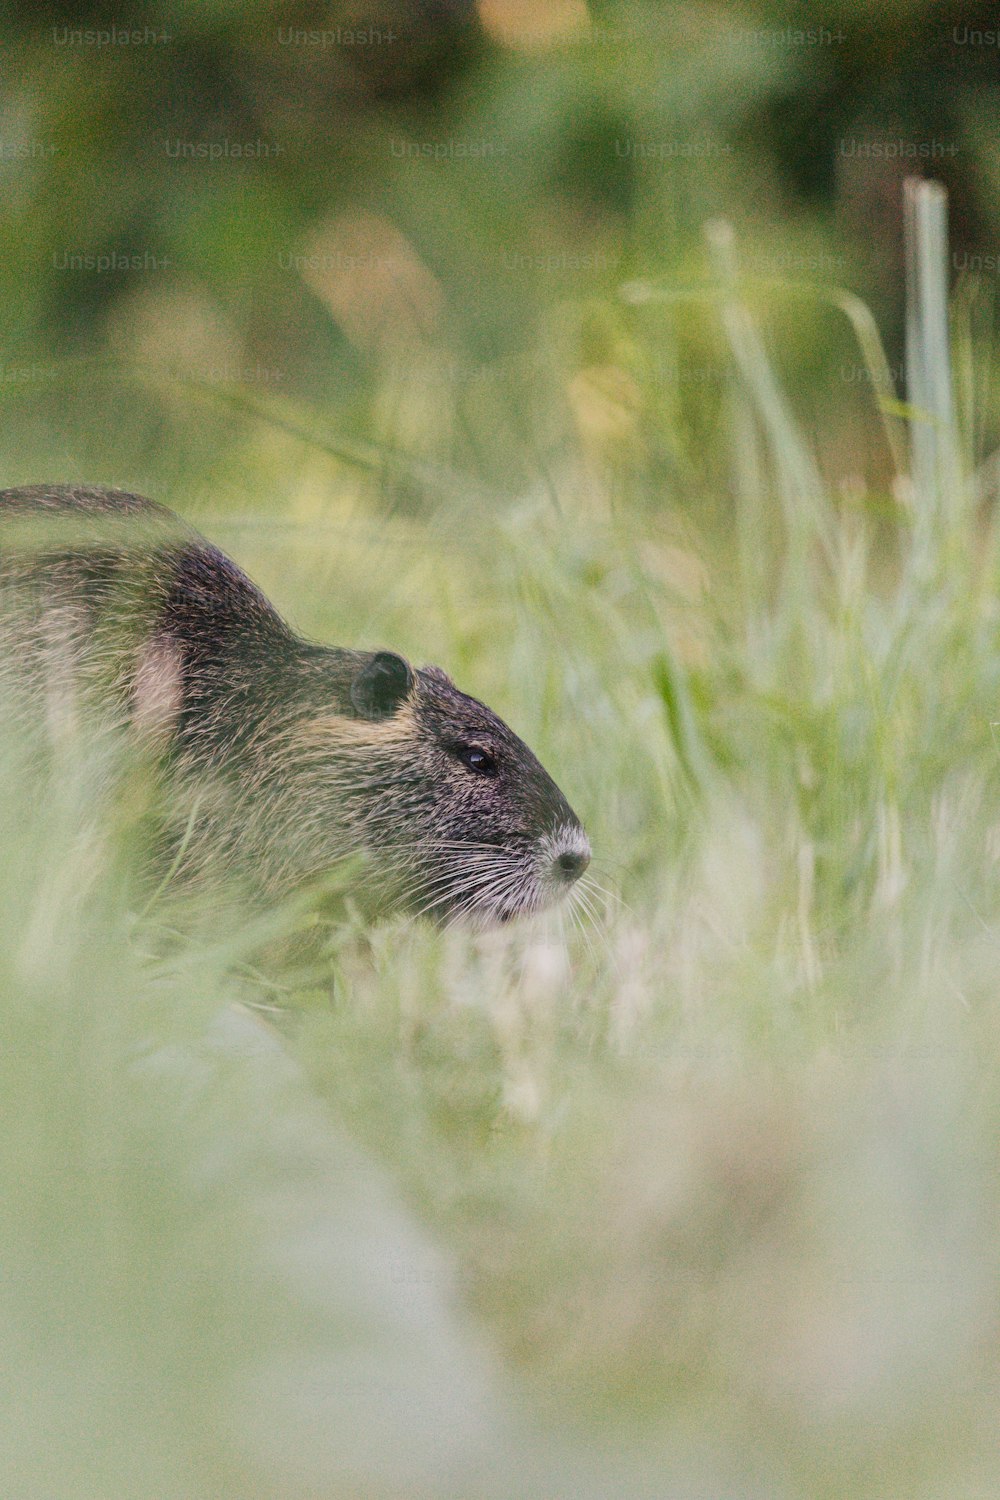 Un pequeño animal en la hierba